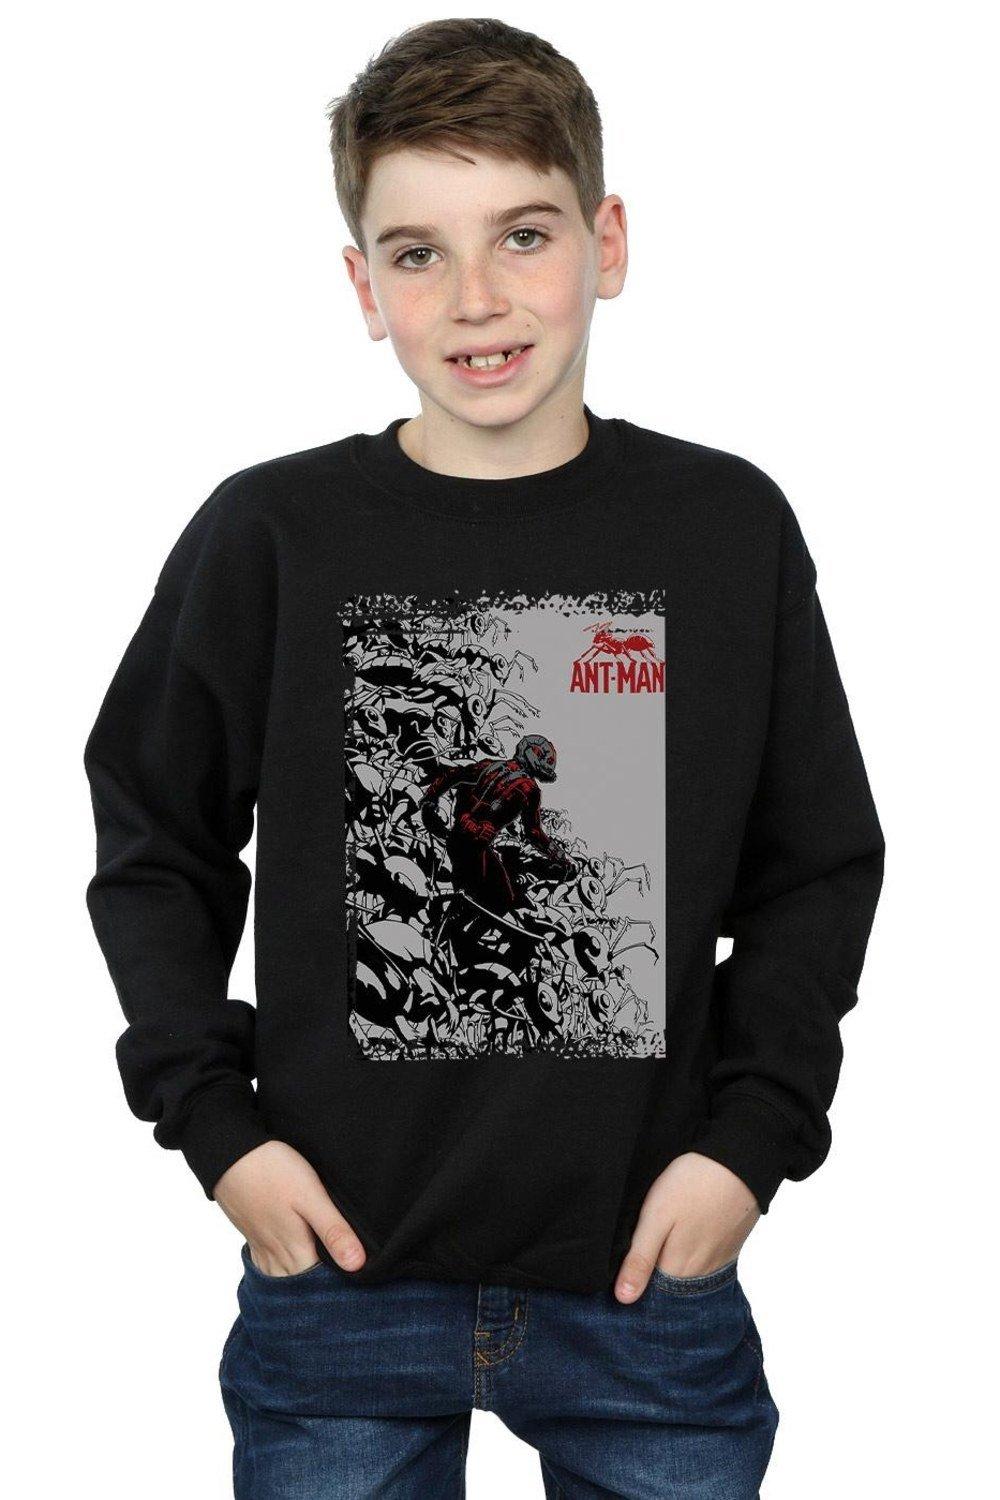 Ant-Man Army Sweatshirt